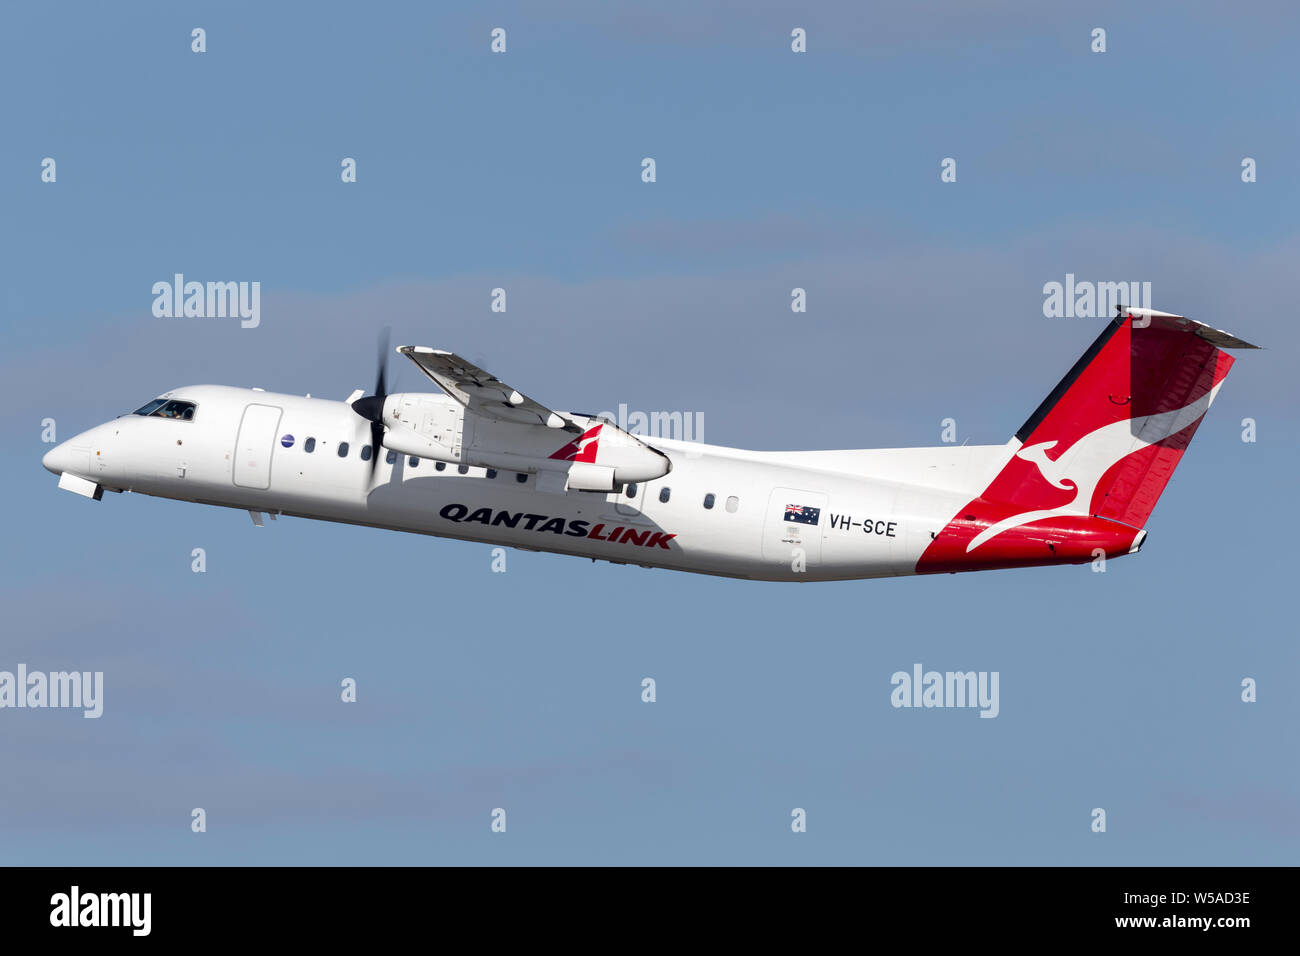 QantasLink (östliche Australien Airlines) de Havilland Canada Dash 8 zweimotorige Turboprop regional airliner Flugzeuge vom Flughafen Sydney. Stockfoto